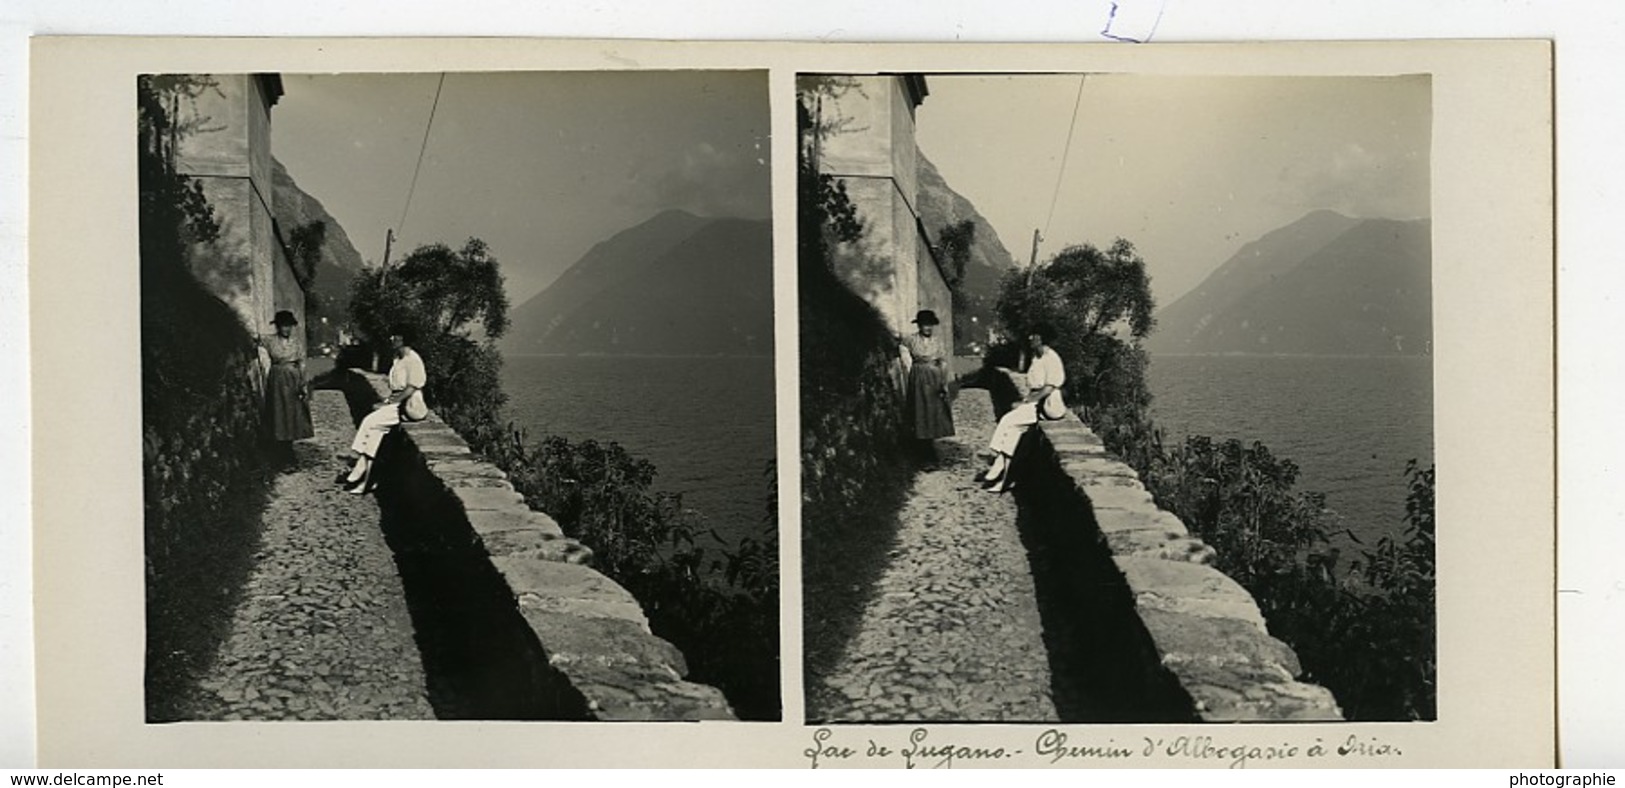 Italie Lac De Lugano Chemin D'Albogasio à Oria Ancienne Photo Stereo Possemiers 1900 - Photos Stéréoscopiques